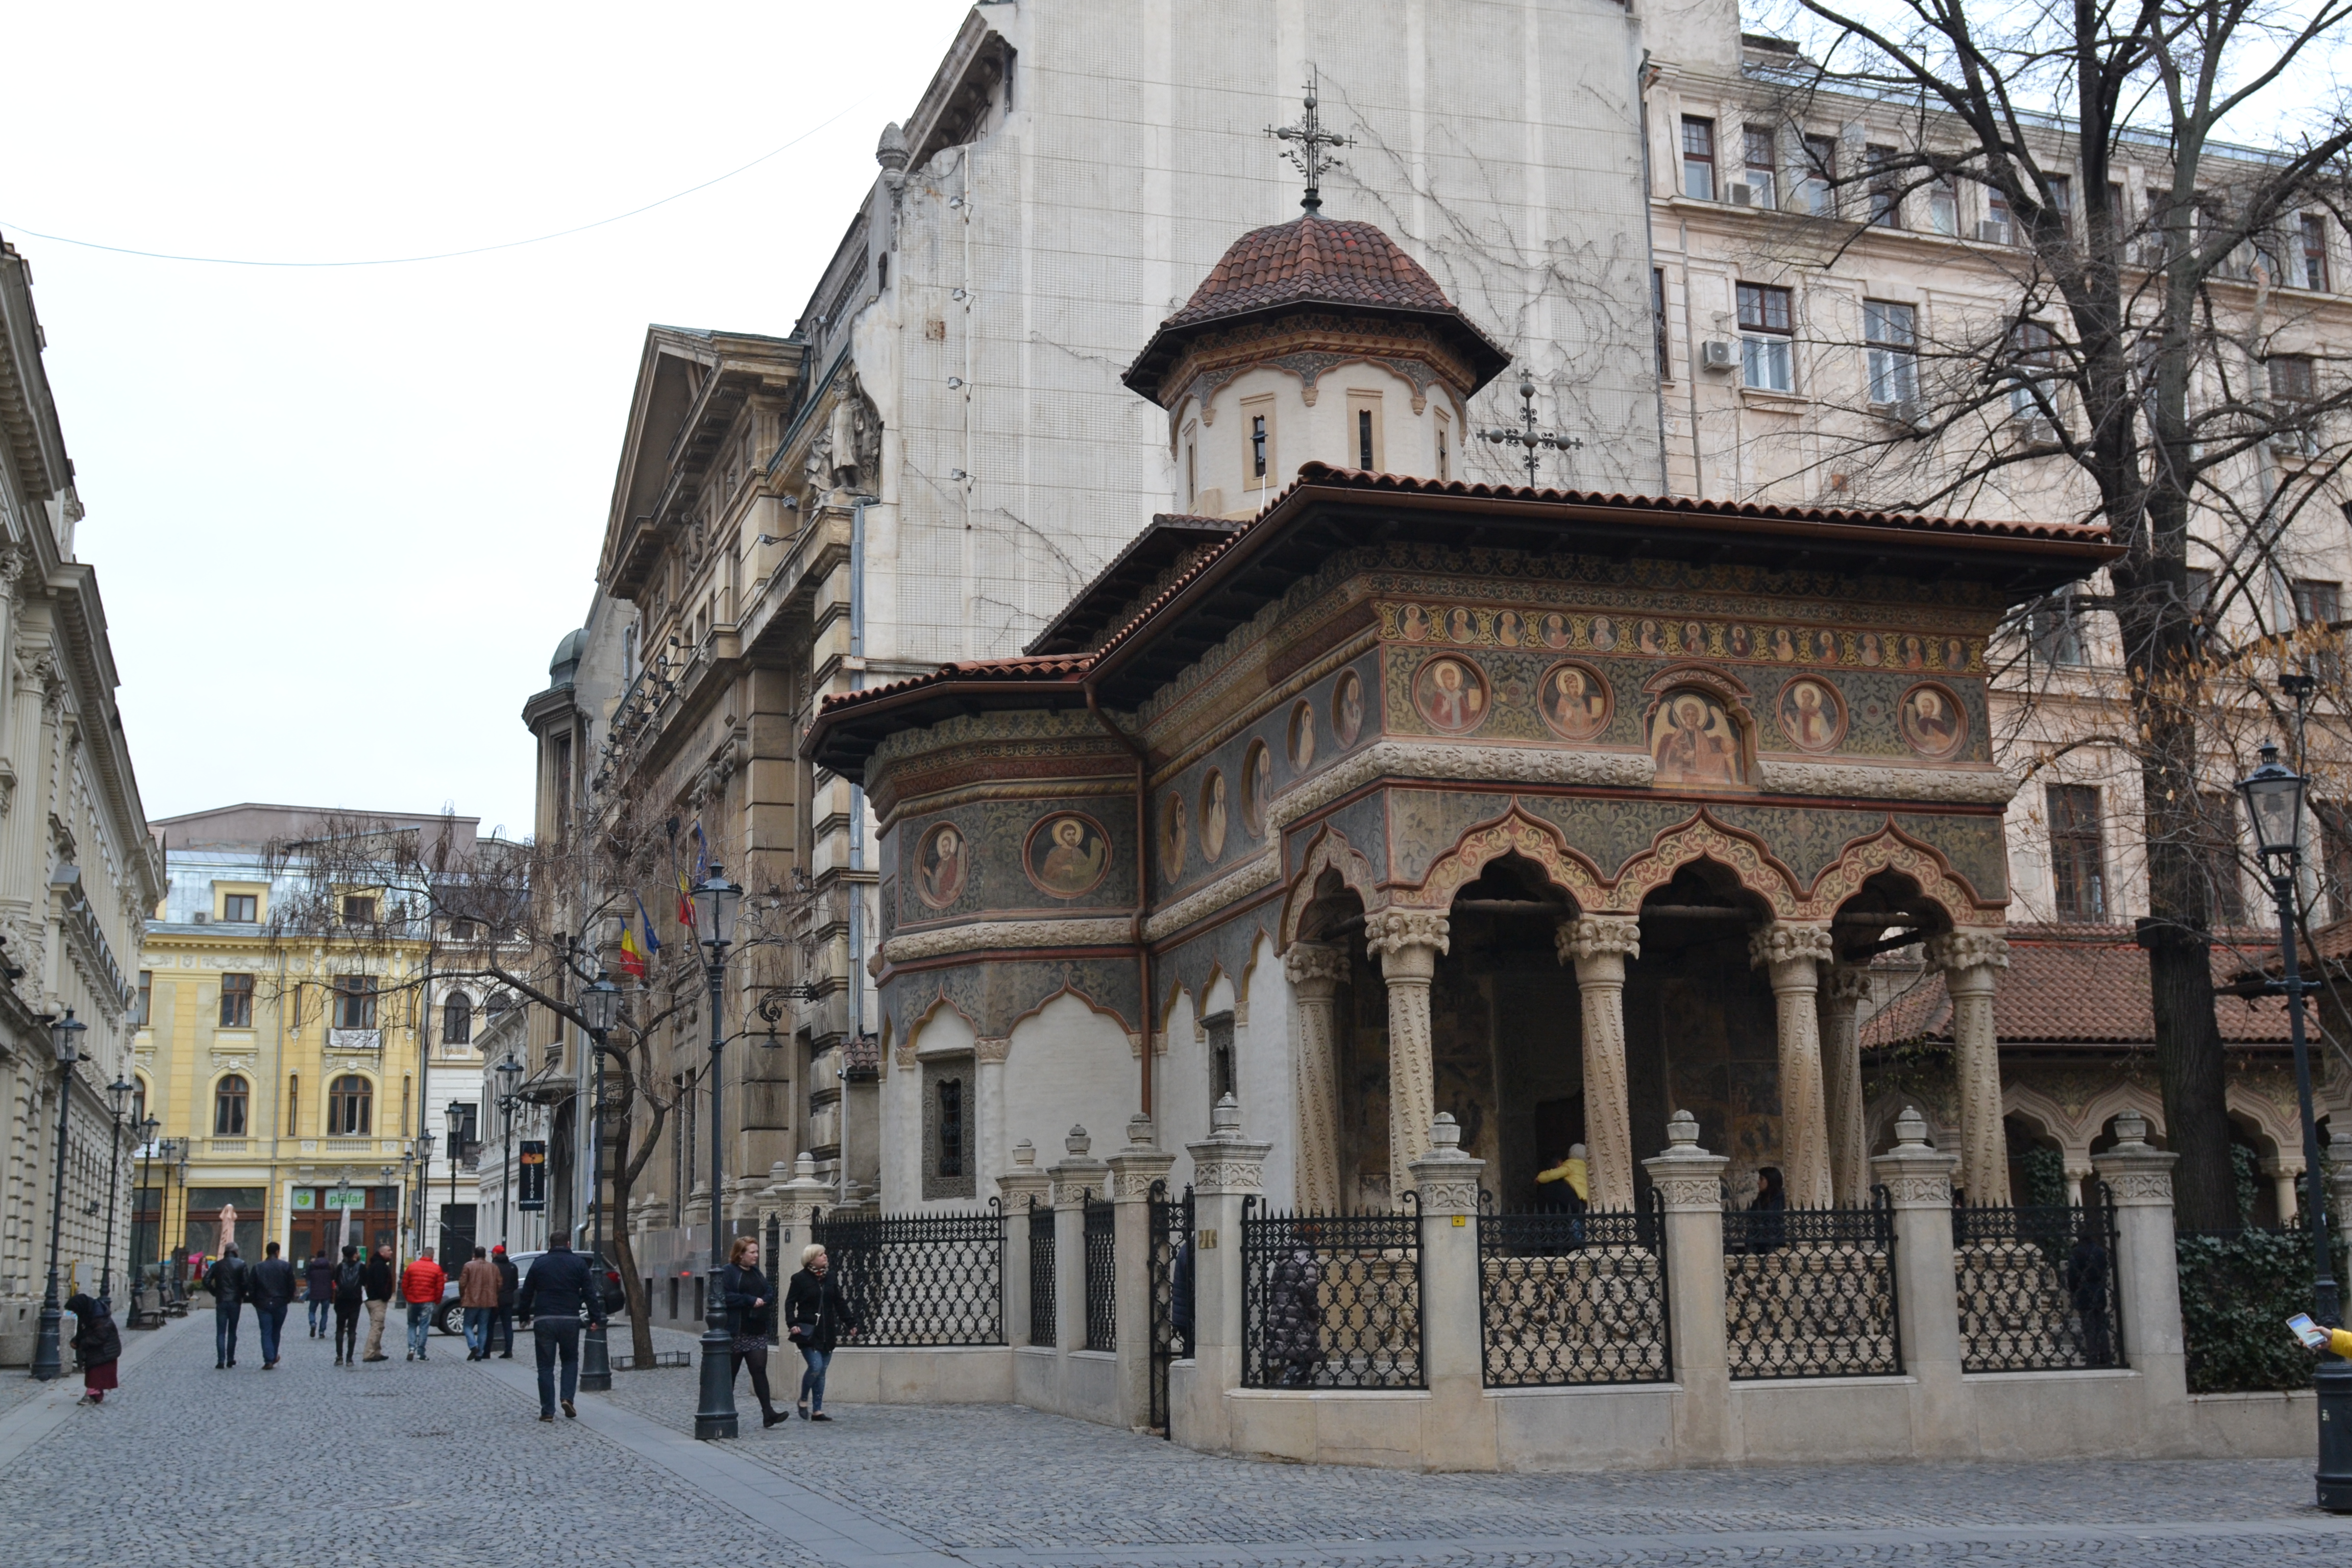 Chiesa in stile bizantino decorata con pitture di santi su strada pedonale